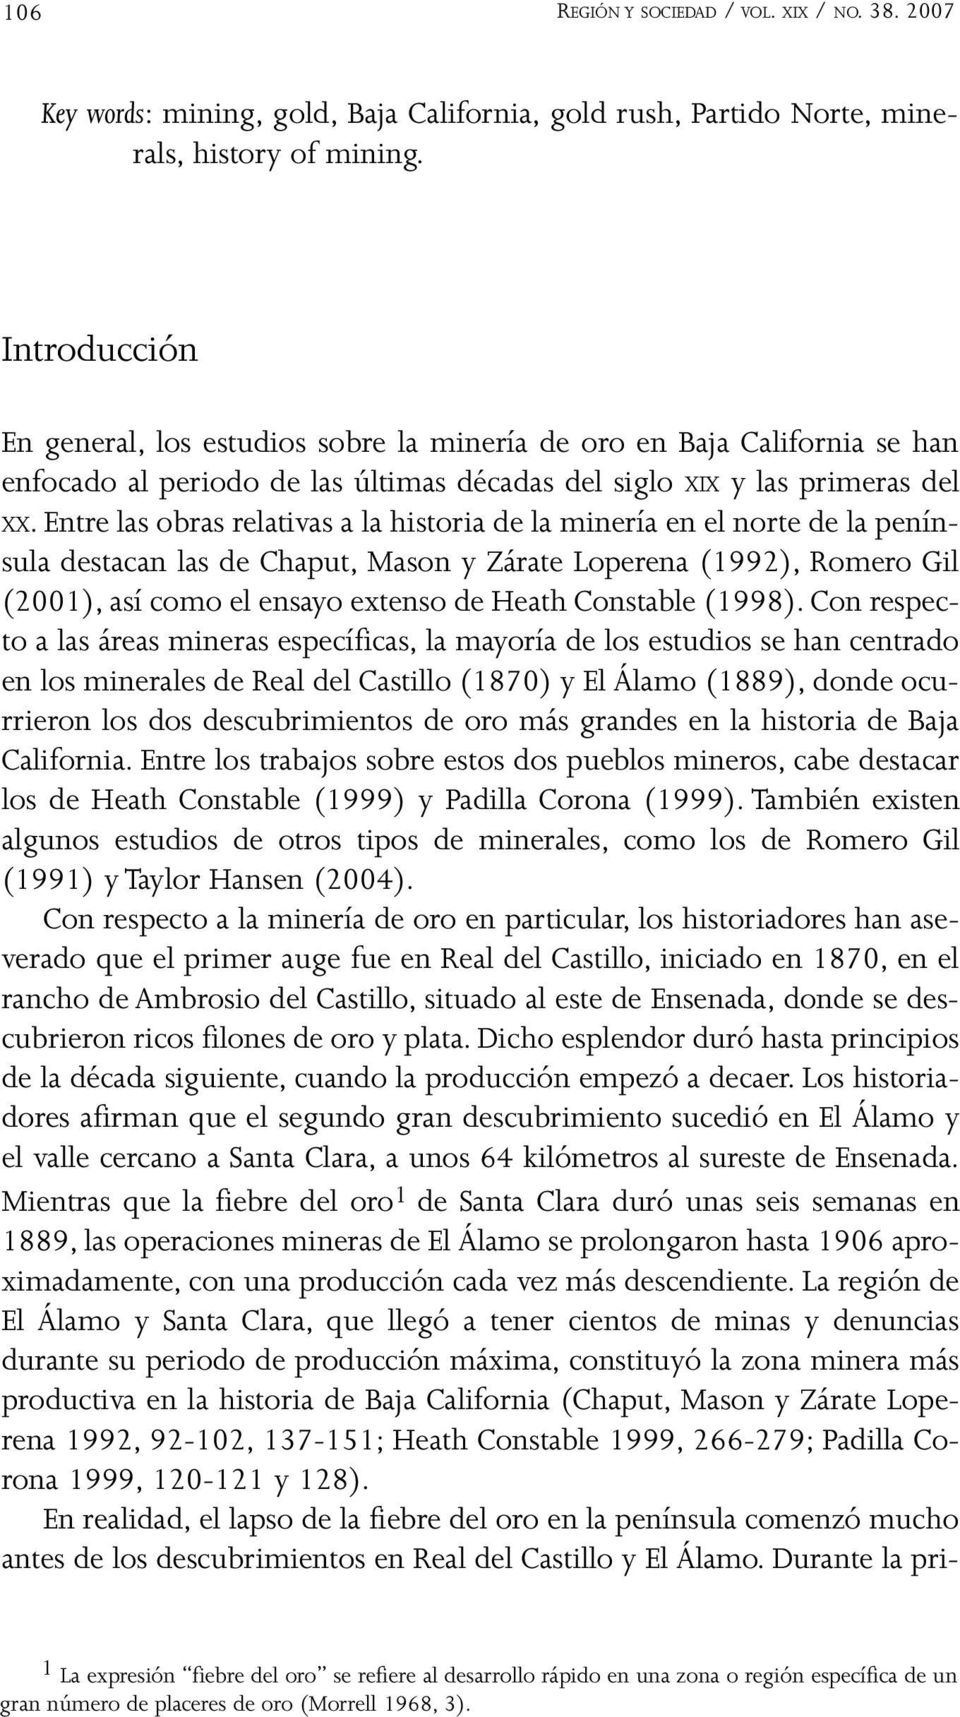 Entre las obras relativas a la historia de la minería en el norte de la península destacan las de Chaput, Mason y Zárate Loperena (1992), Romero Gil (2001), así como el ensayo extenso de Heath